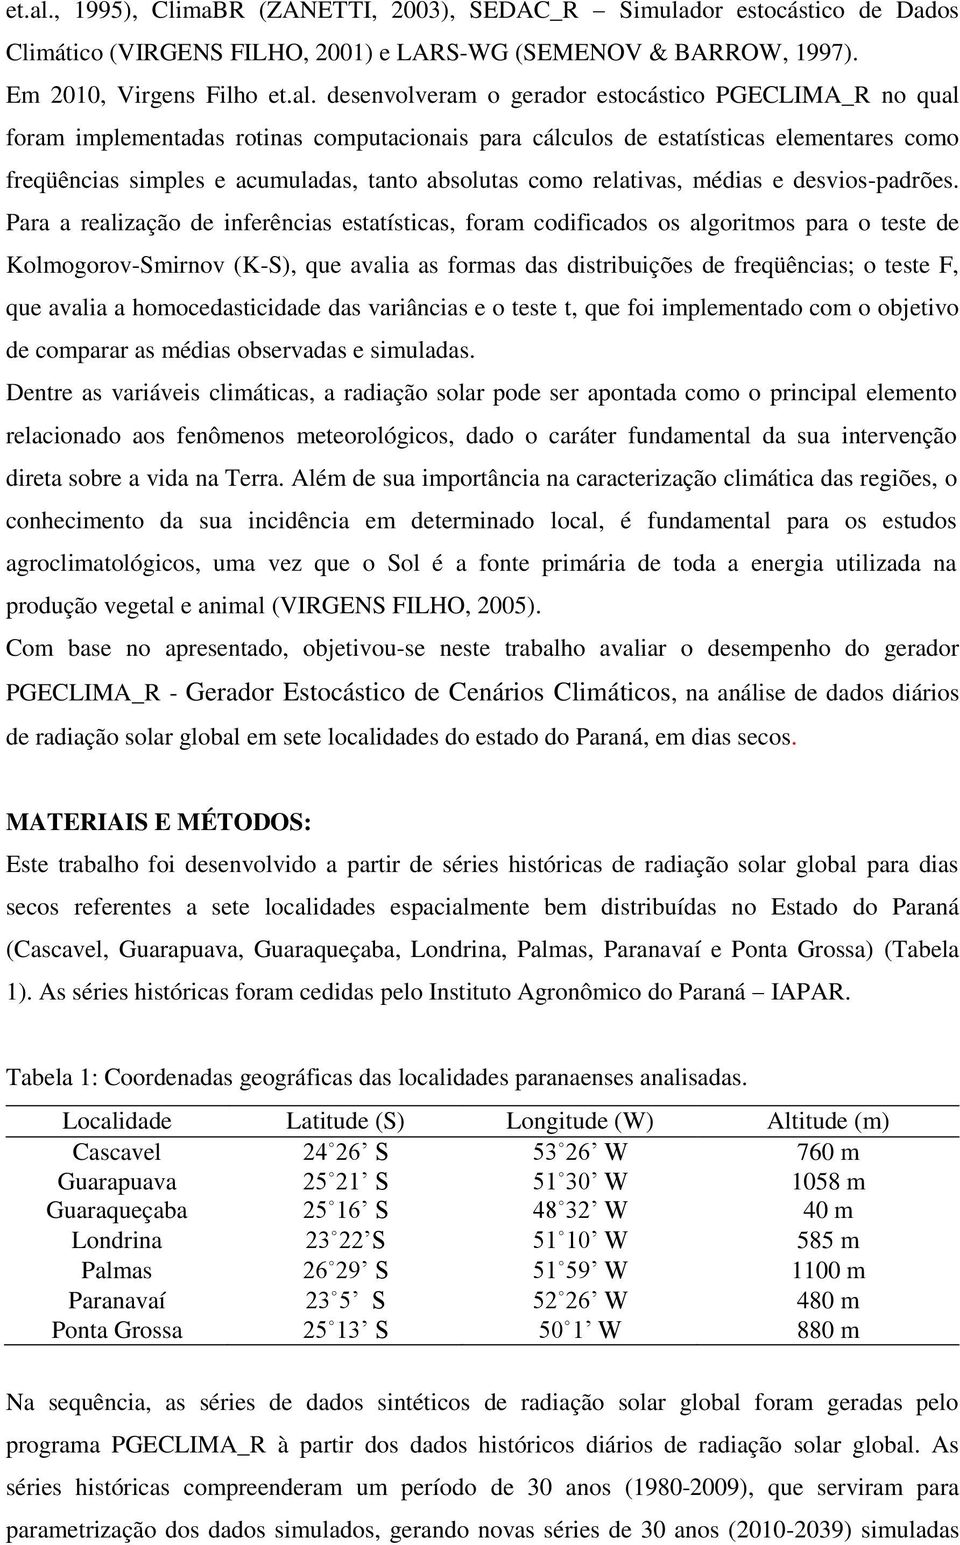 Em 2010, Virgens Filho  desenvolveram o gerador estocástico PGECLIMA_R no qual foram implementadas rotinas computacionais para cálculos de estatísticas elementares como freqüências simples e